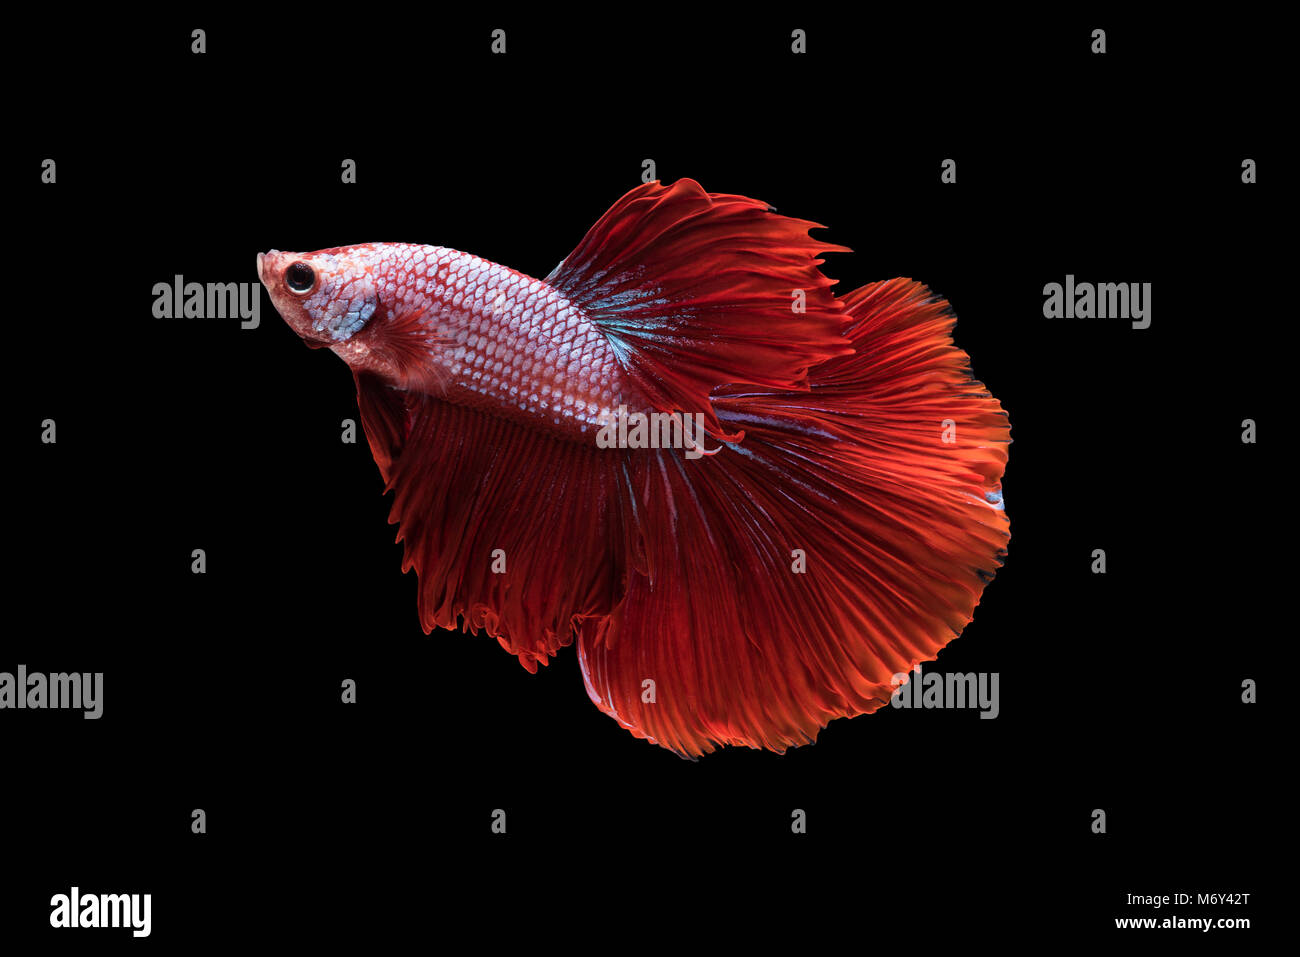 Rot Halfmoon Betta Splendens oder siamesische Kampffische auf schwarzem Hintergrund isoliert enthalten Schneidepfad, Plakat-Thailand Stockfoto